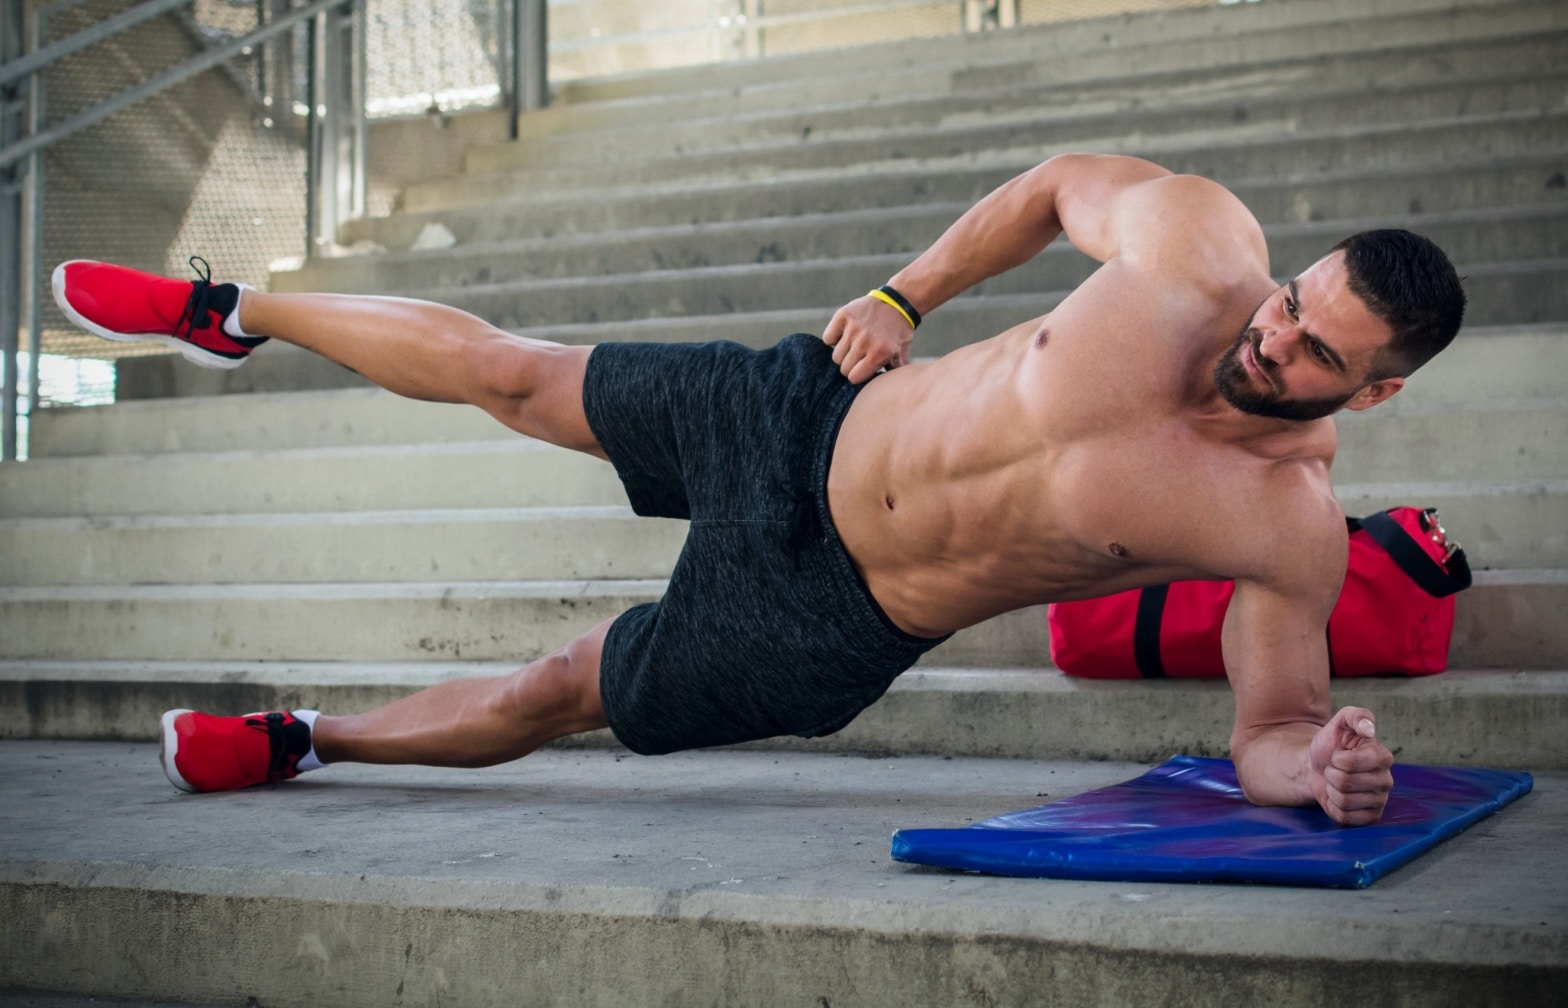 15 avantages du CrossFit pour une meilleure santé et forme physique